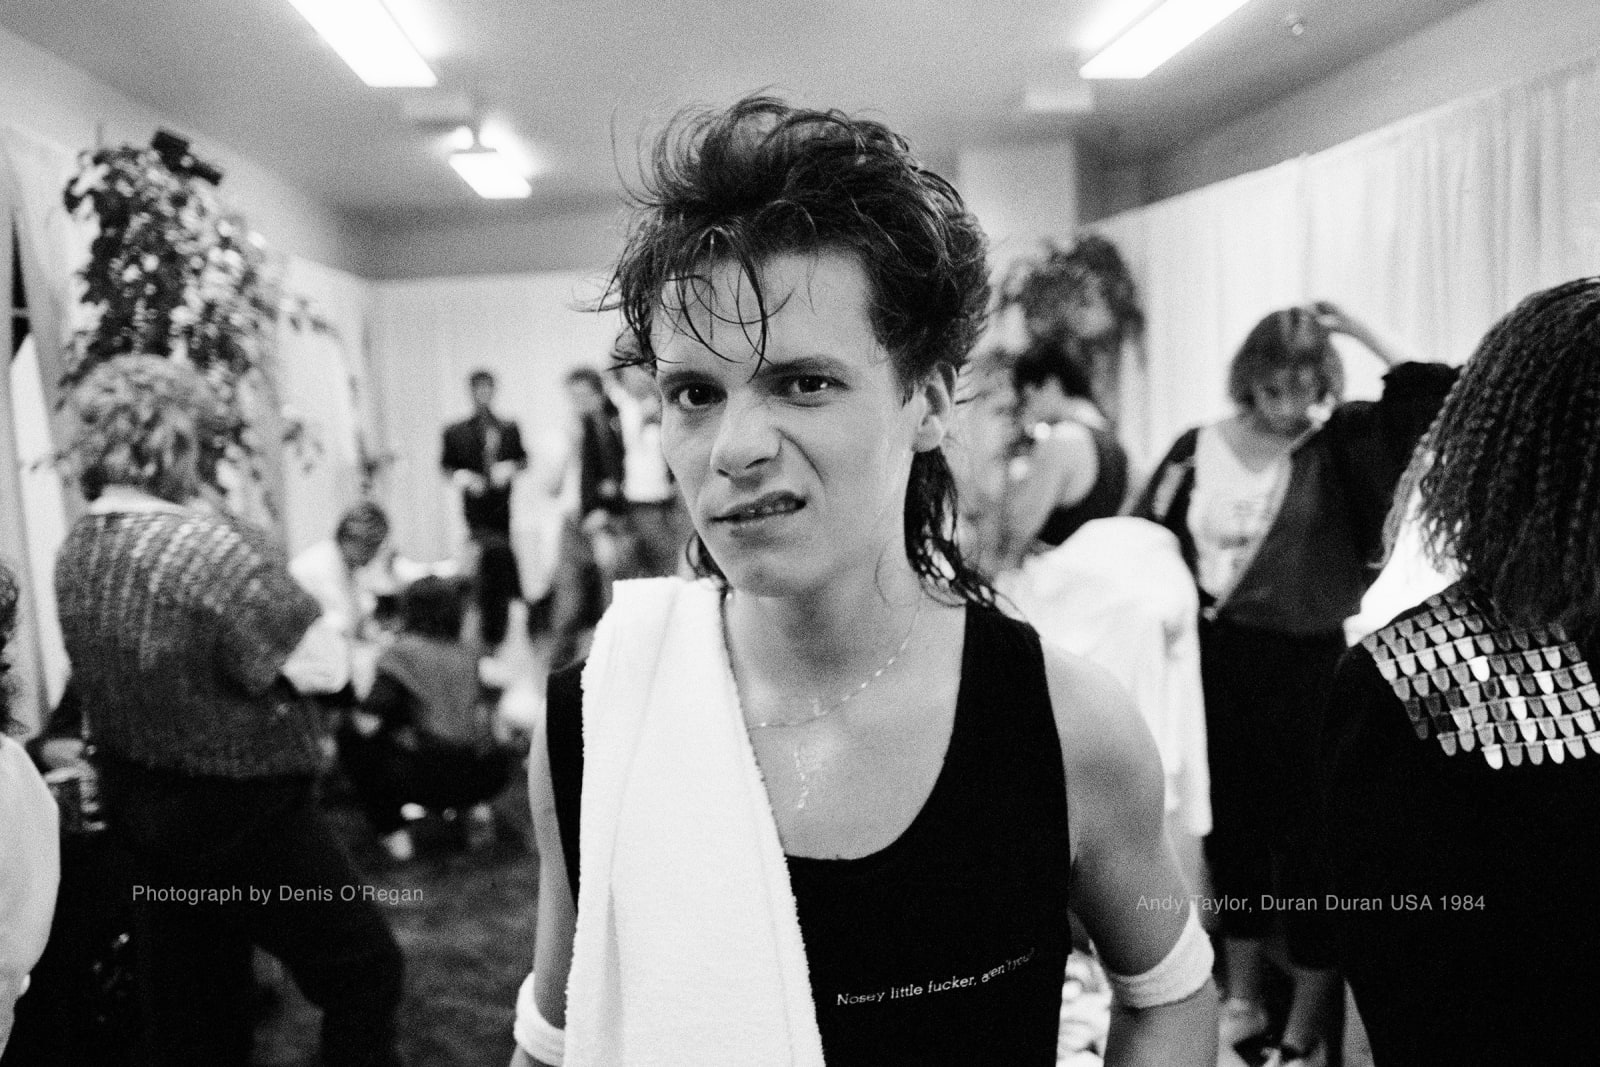 DURAN DURAN, Andy Taylor backstage, 1984